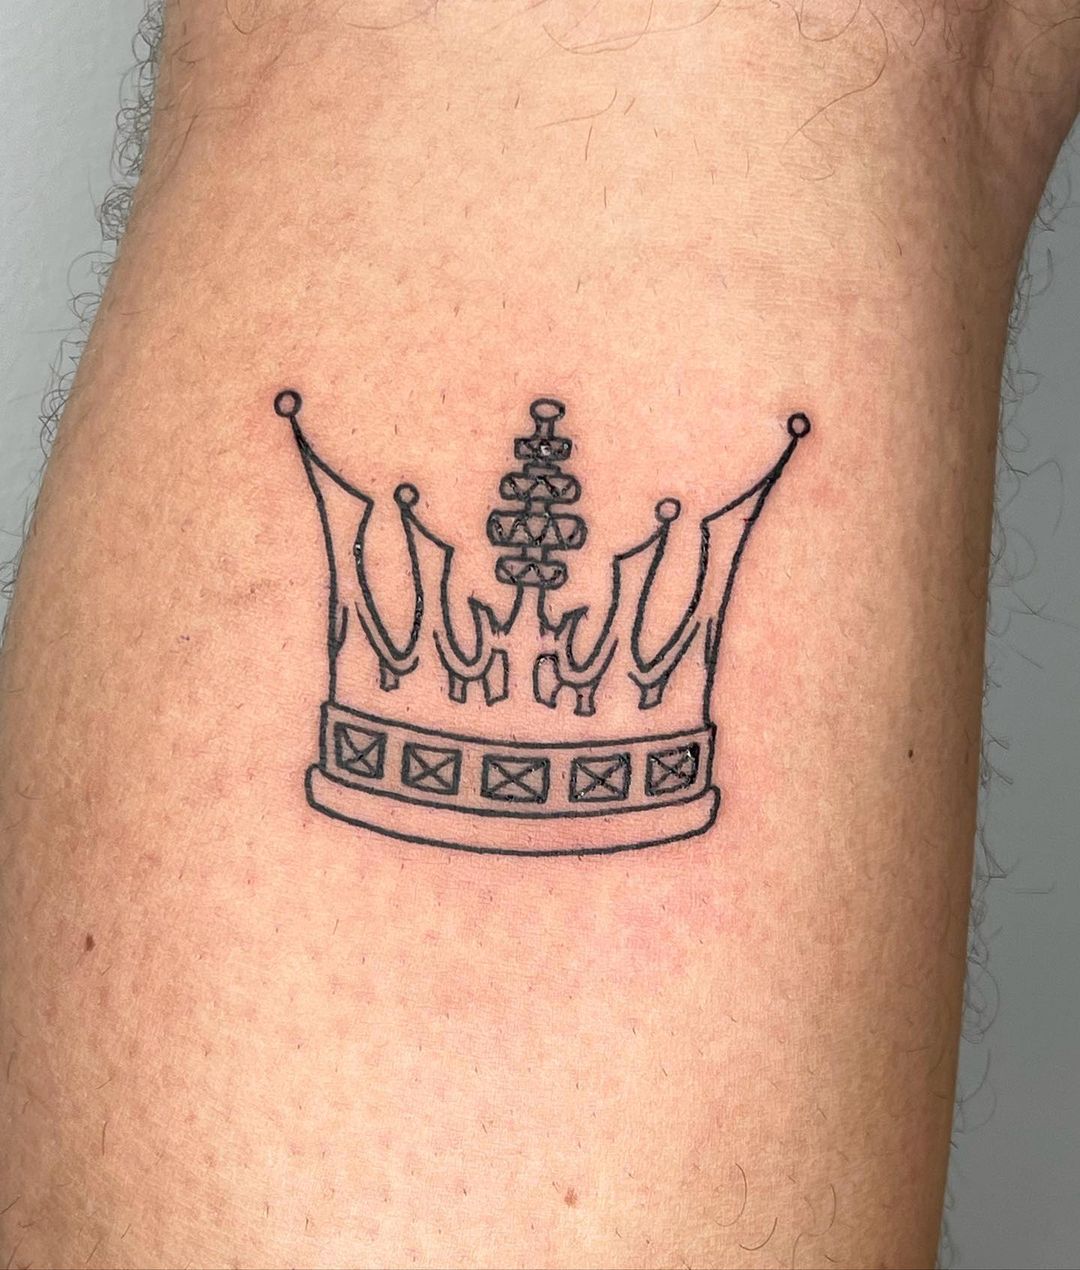 Crown tattoo